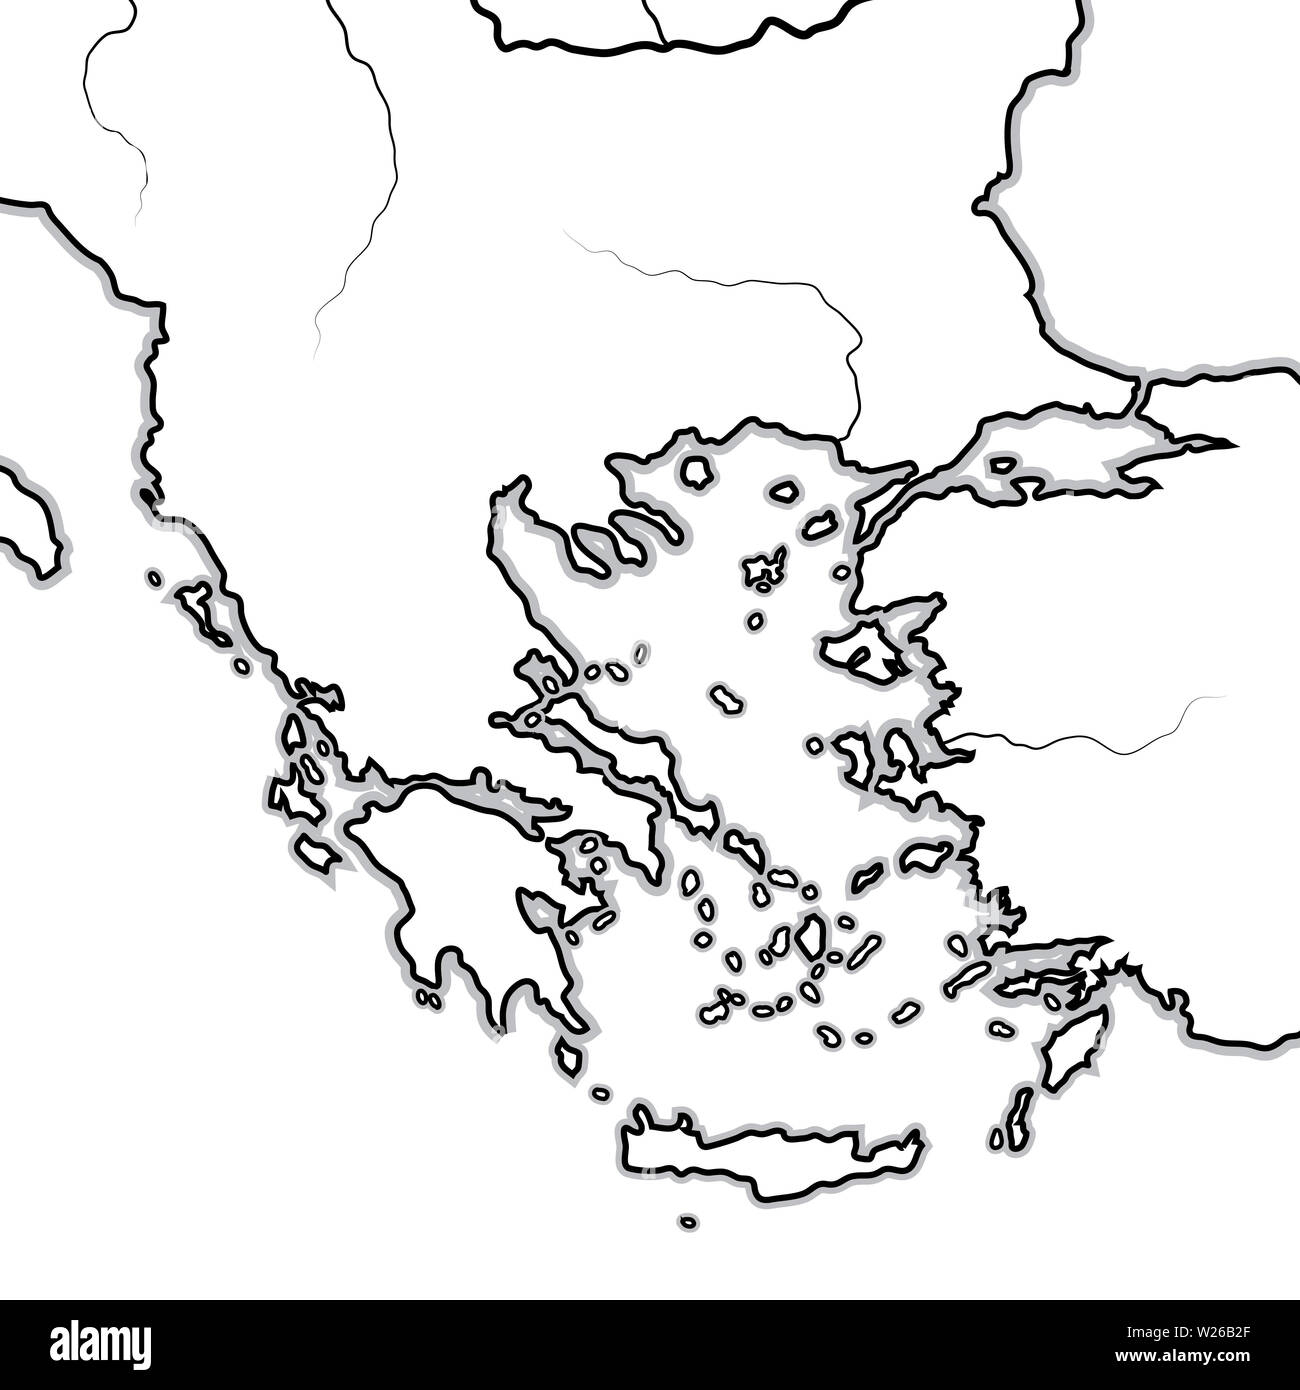 Mappa dei Balcani / greco terre: Grecia (Hellas), Balcani, Peloponneso, Thessalia, Thracia, Macedonia, Albania, Illyria, Ionia, Anatolia, il Mare Egeo. Foto Stock